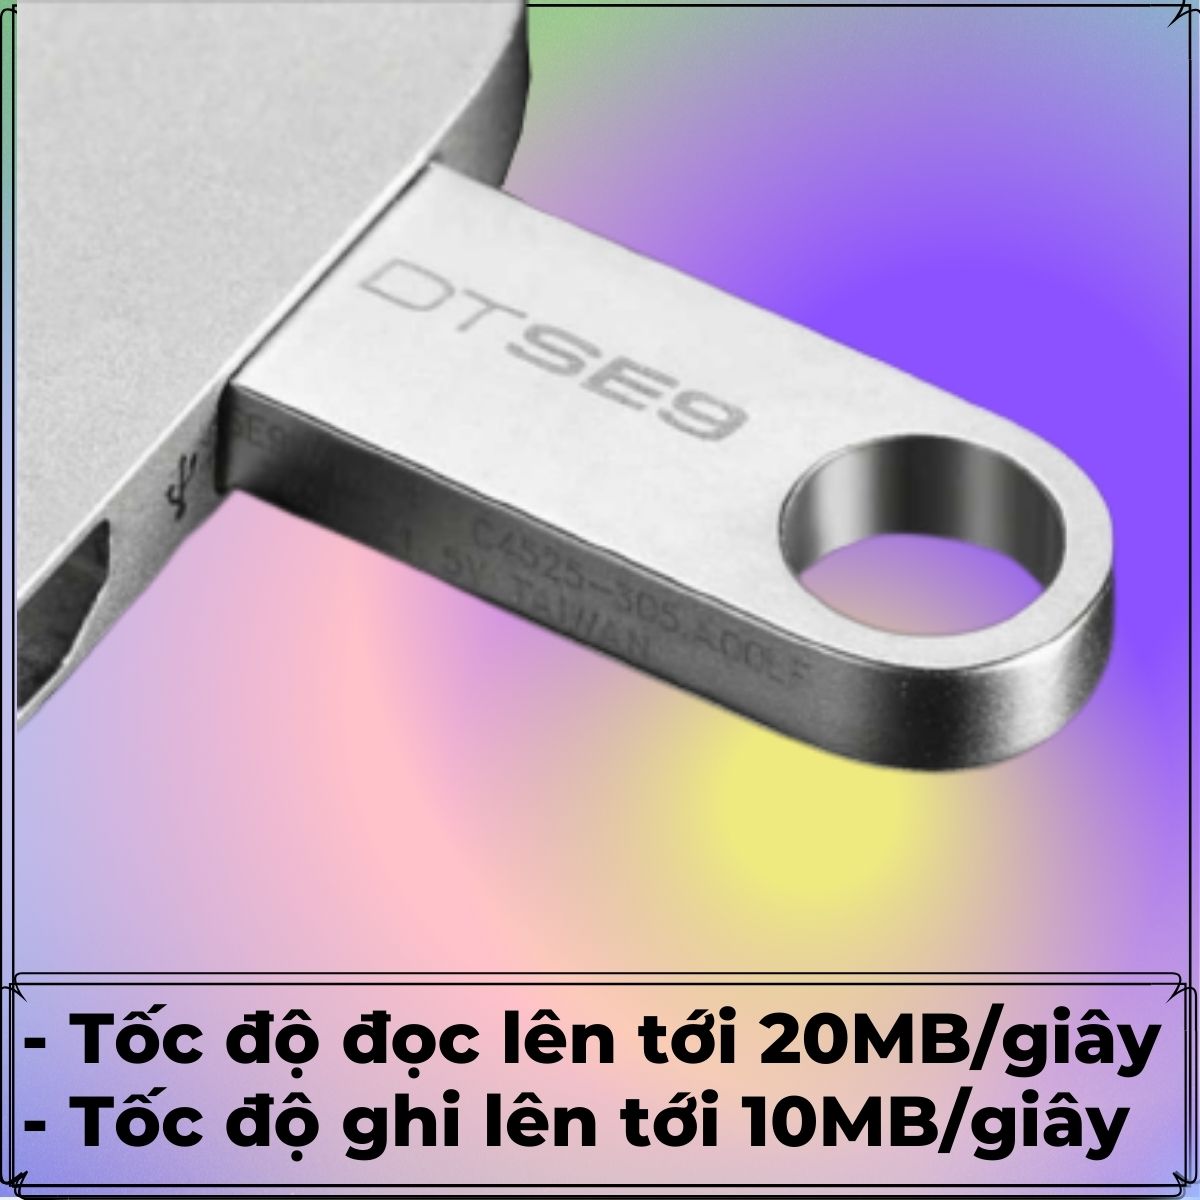 USB 64gb cao cấp TLT - Thiết kế nhỏ gọn, vỏ kim loại, chống nước, kết hợp công nghệ truyền tải siêu tốc